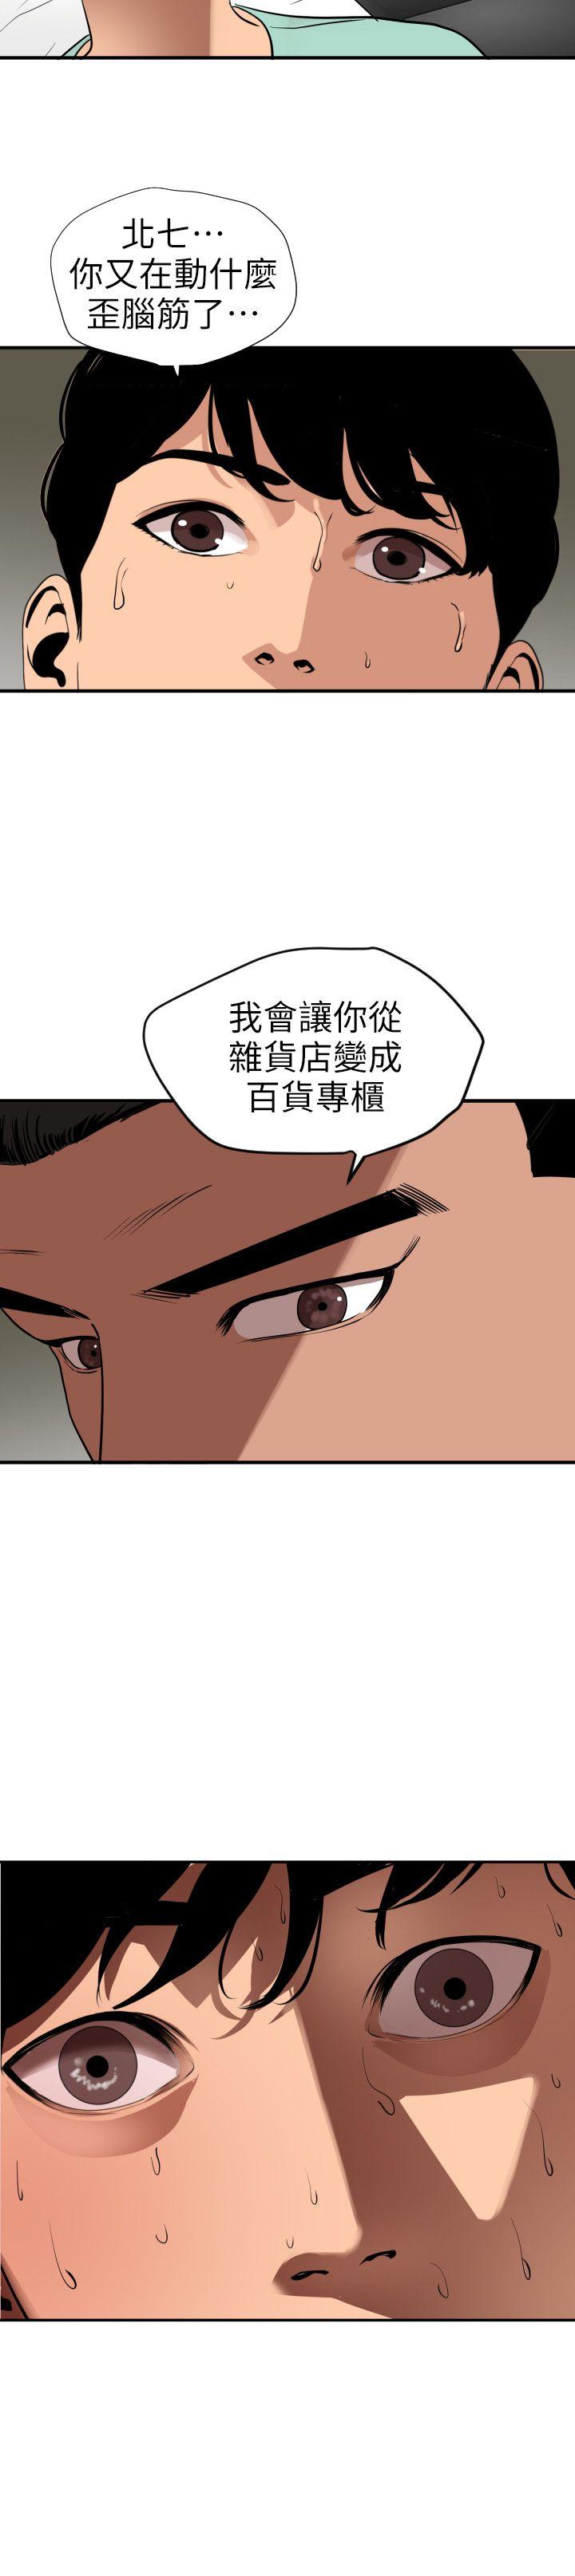 韩国污漫画 欲求王 第108话-失语症 18